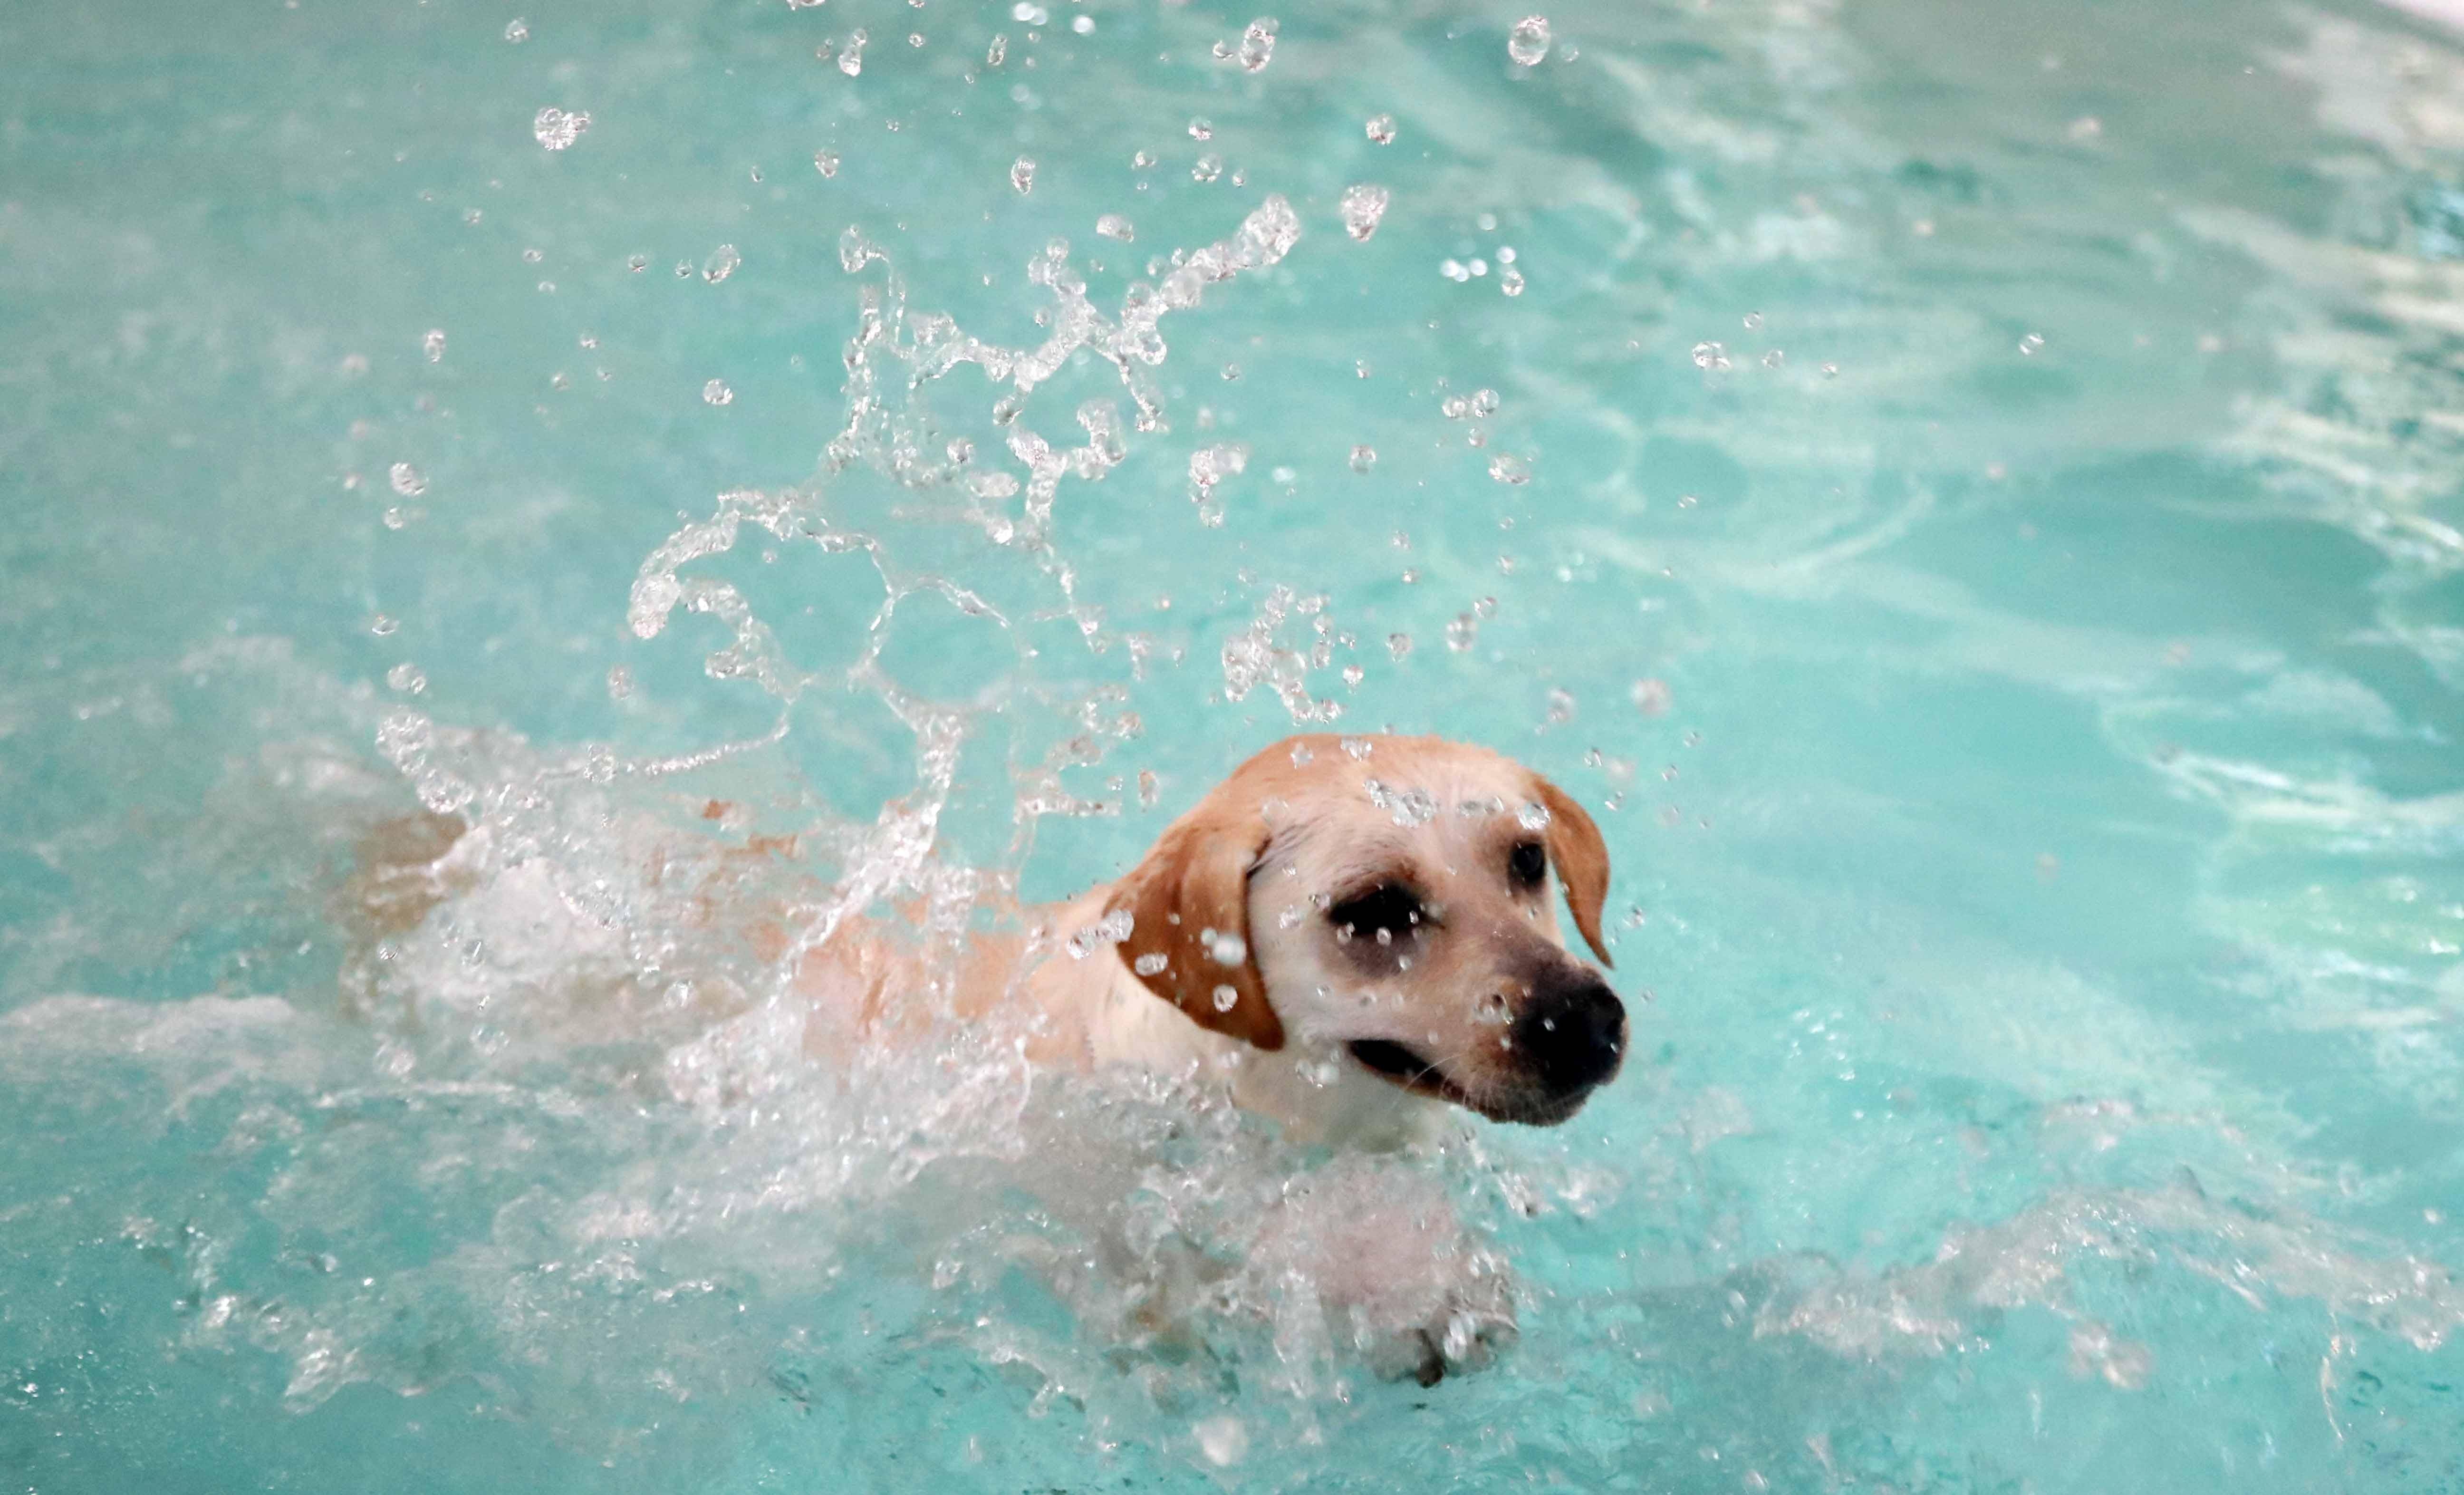 狗狗游泳表情包图片